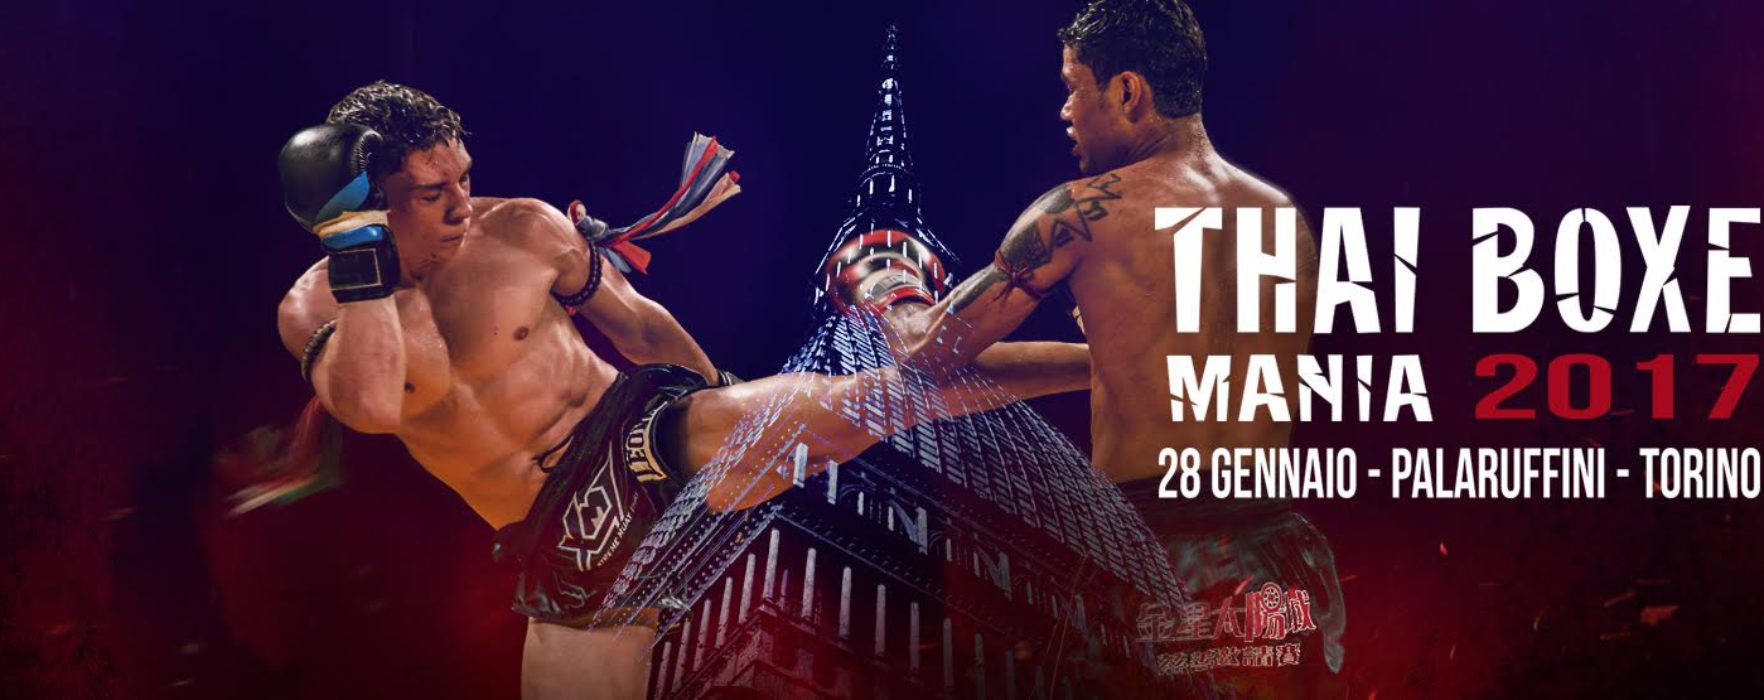 (Italiano) Arriva “Thai Boxe Mania”, l’evento di Muay Thai più atteso!